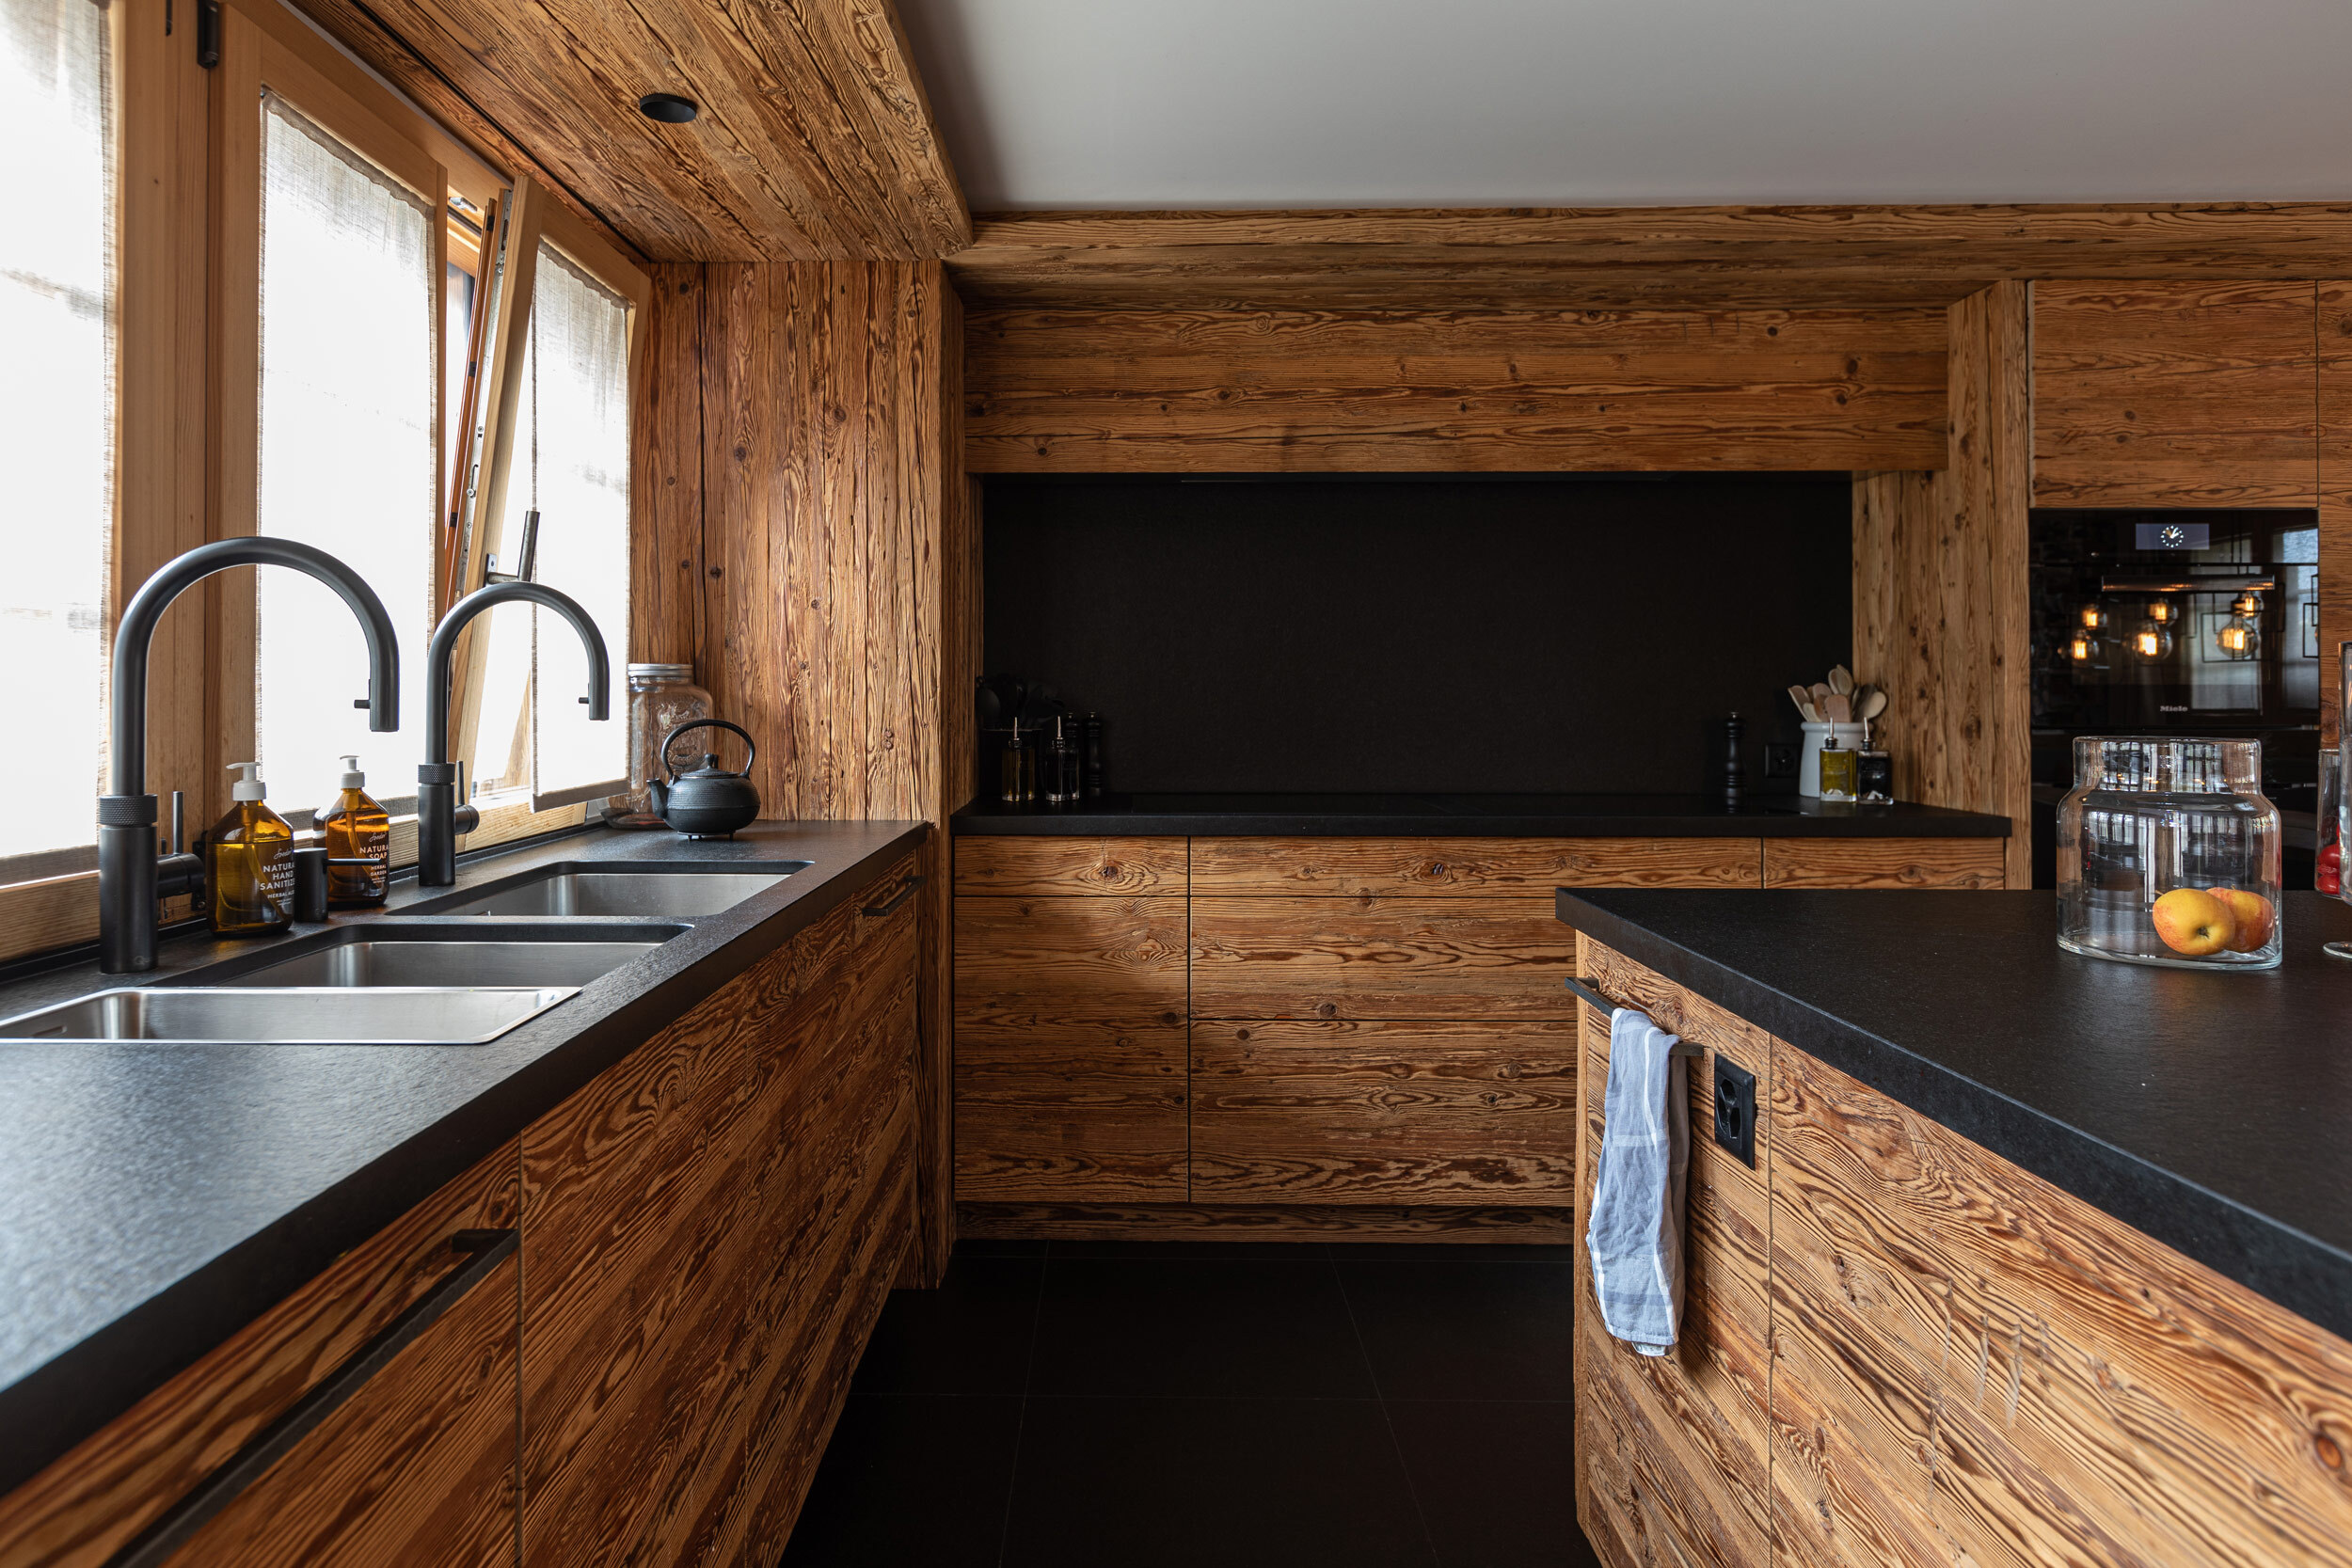 02-modern-kitchen-wood-stone.jpg